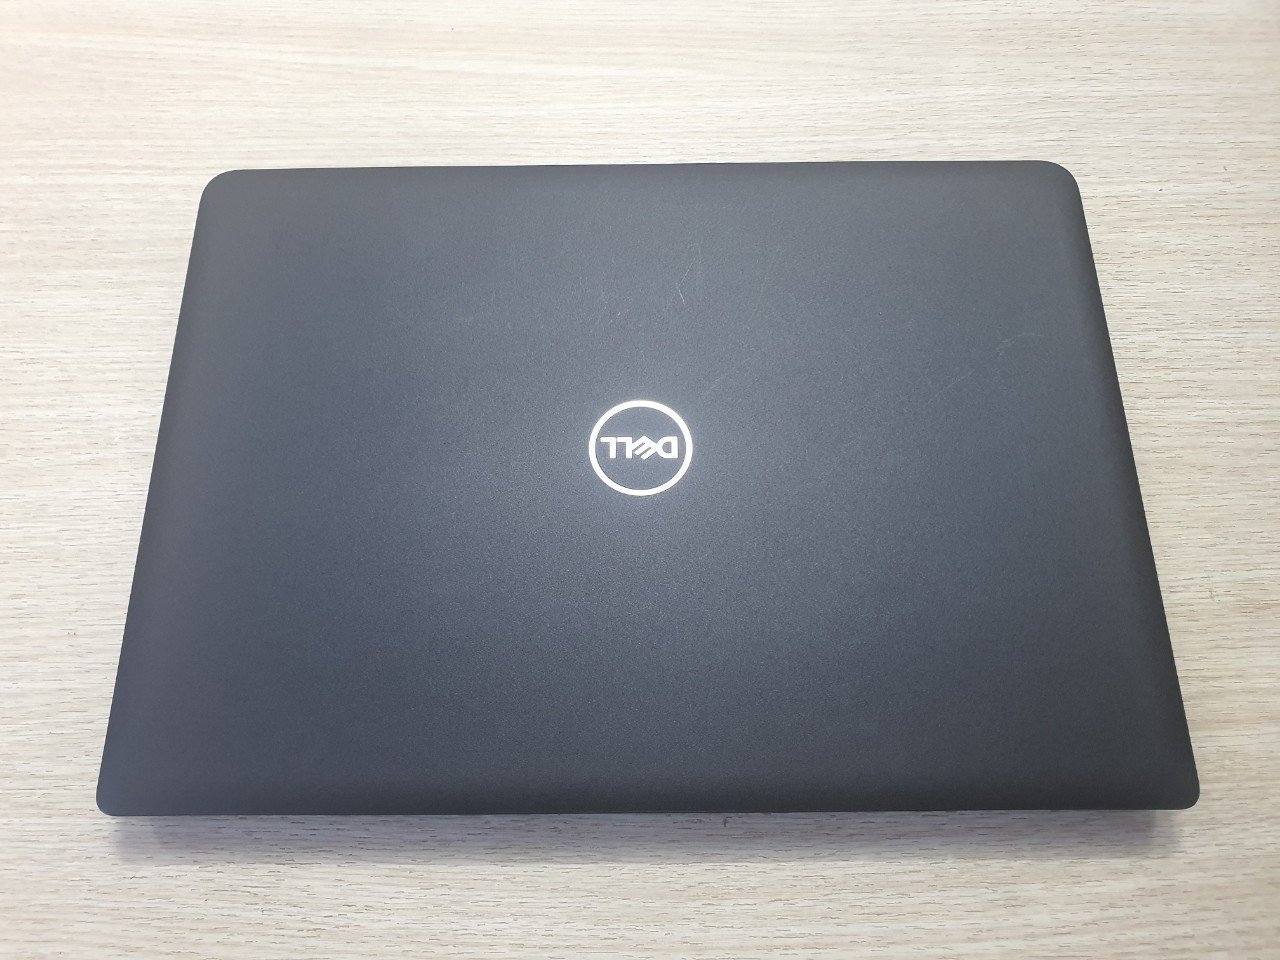 Khuyến mãi lớn: Mua Laptop Dell tại Thủ Dầu Một - Giảm ngay 200k khi check-in! - Ảnh chính